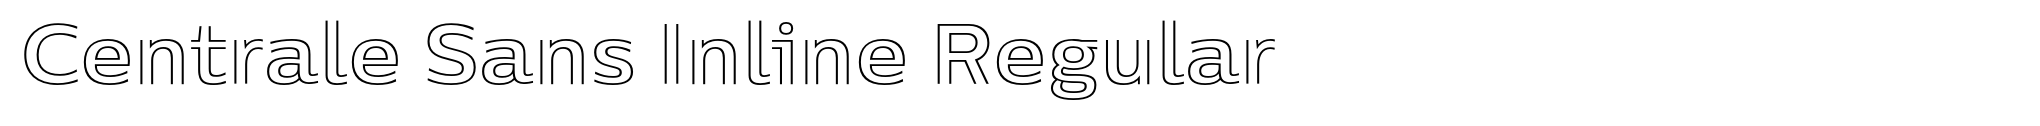 Centrale Sans Inline Regular image